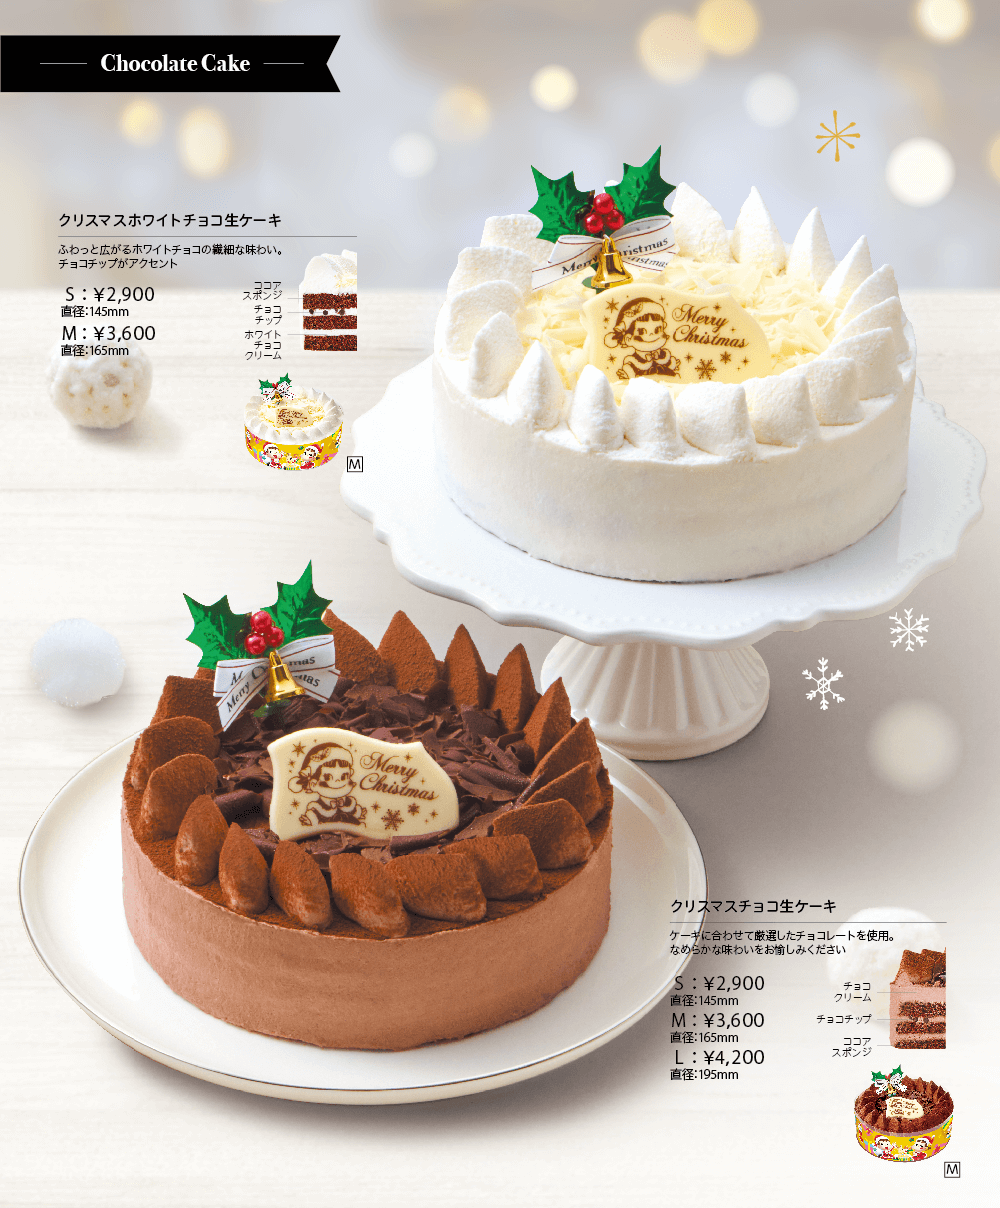 Chocolate Cake クリスマスホワイトチョコ生ケーキ ふわっと広がるホワイトチョコの繊細な味わい。チョコチップがアクセント S：￥2,900 直径：145mm M：￥3,600 直径：165mm ココアスポンジ チョコチップ ホワイトチョコクリーム クリスマスチョコ生ケーキ ケーキに合わせて厳選したチョコレートを使用。なめらかな味わいをお愉しみください S：￥2,900 直径：145mm M：￥3,600 直径：165mm L：￥4,200 直径：195mm チョコクリーム チョコチップ ココアスポンジ